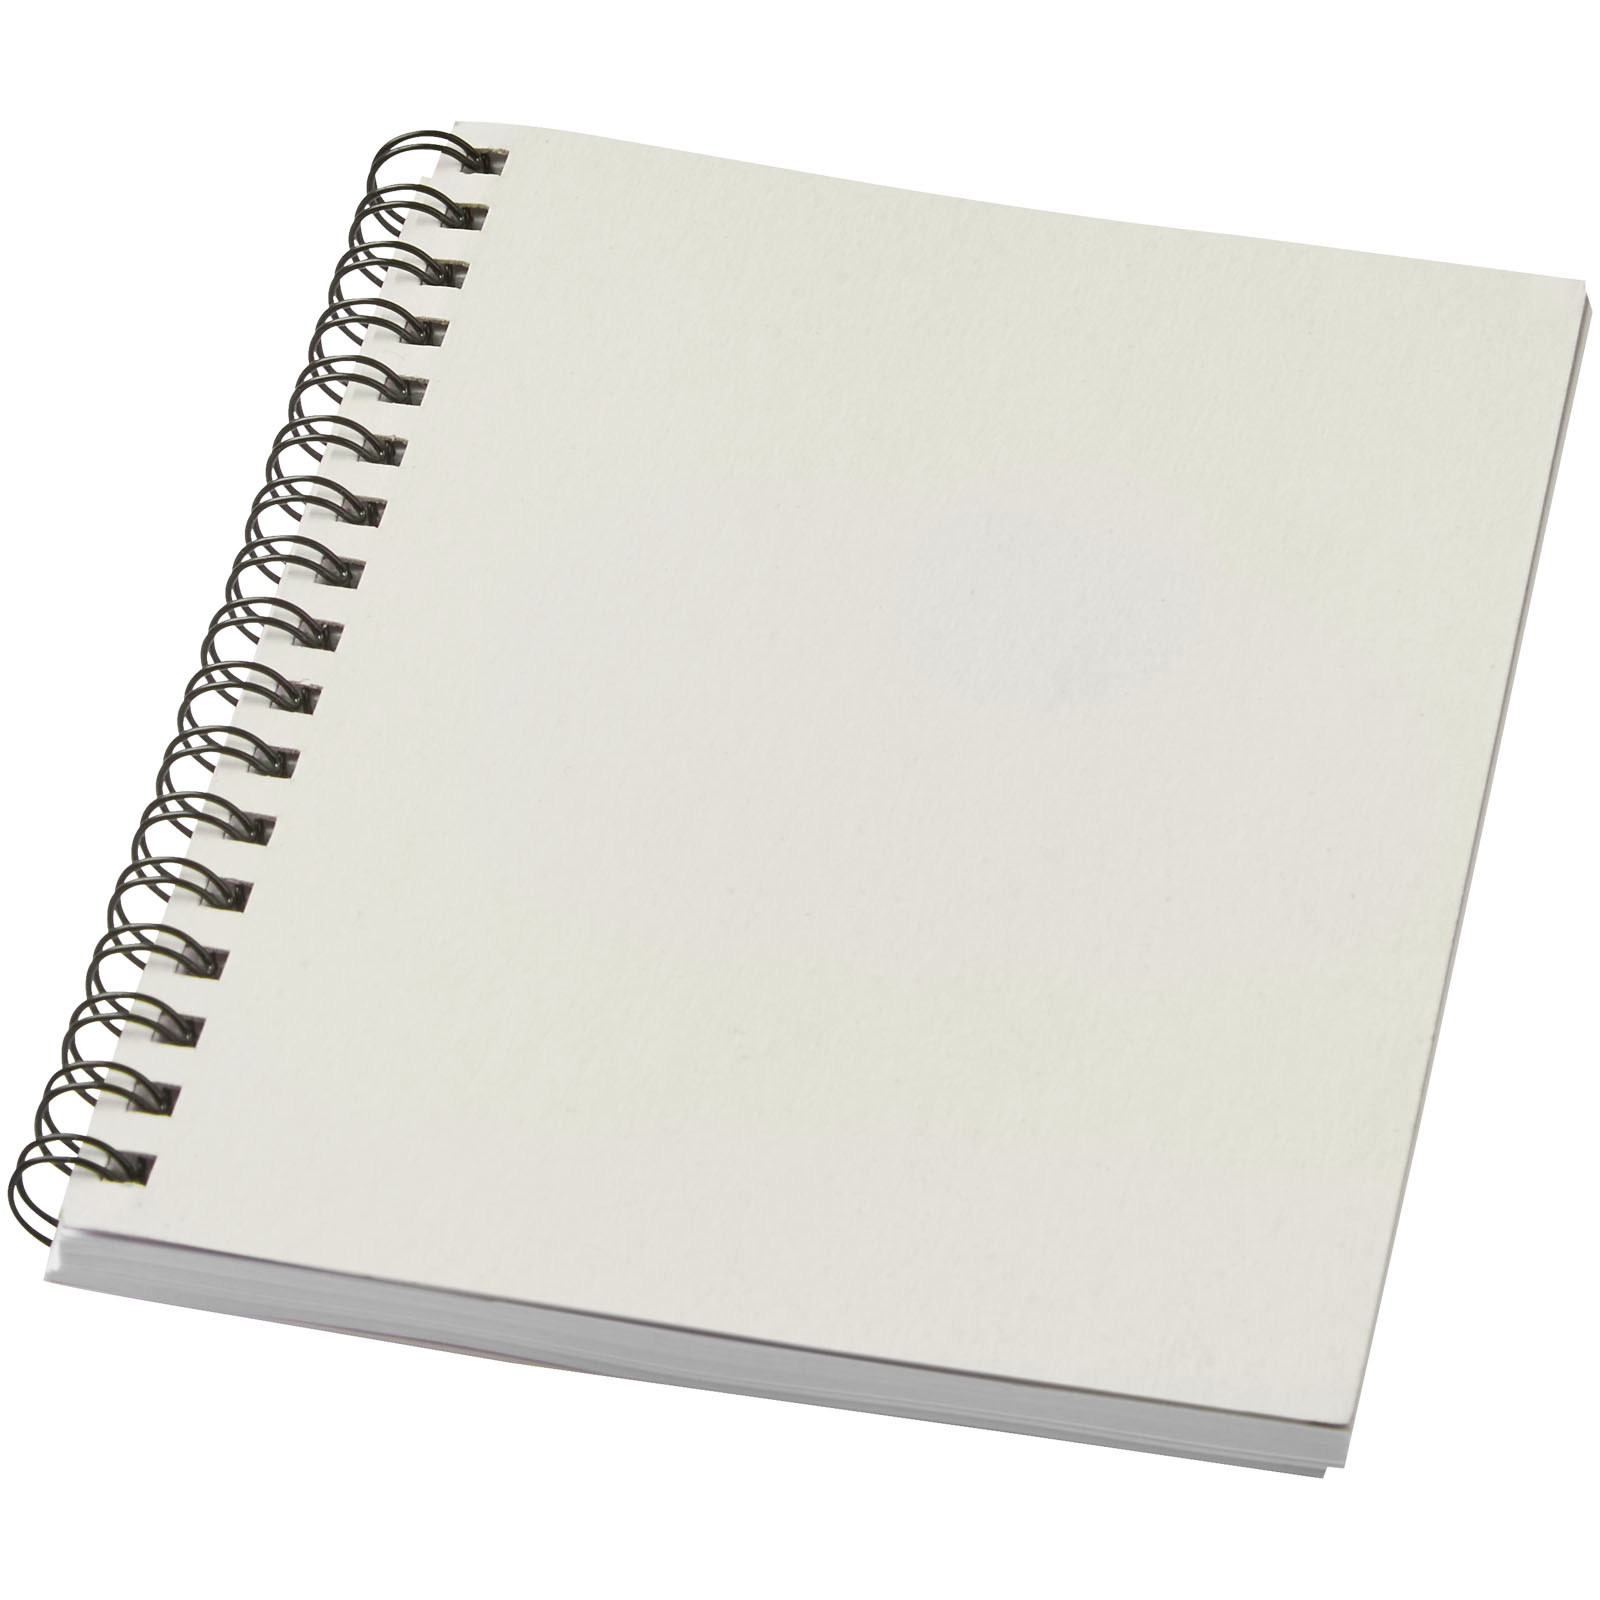 Blocs-notes et essentiels pour le bureau - Carnet de notes à spirales Desk-Mate ® A6 coloré